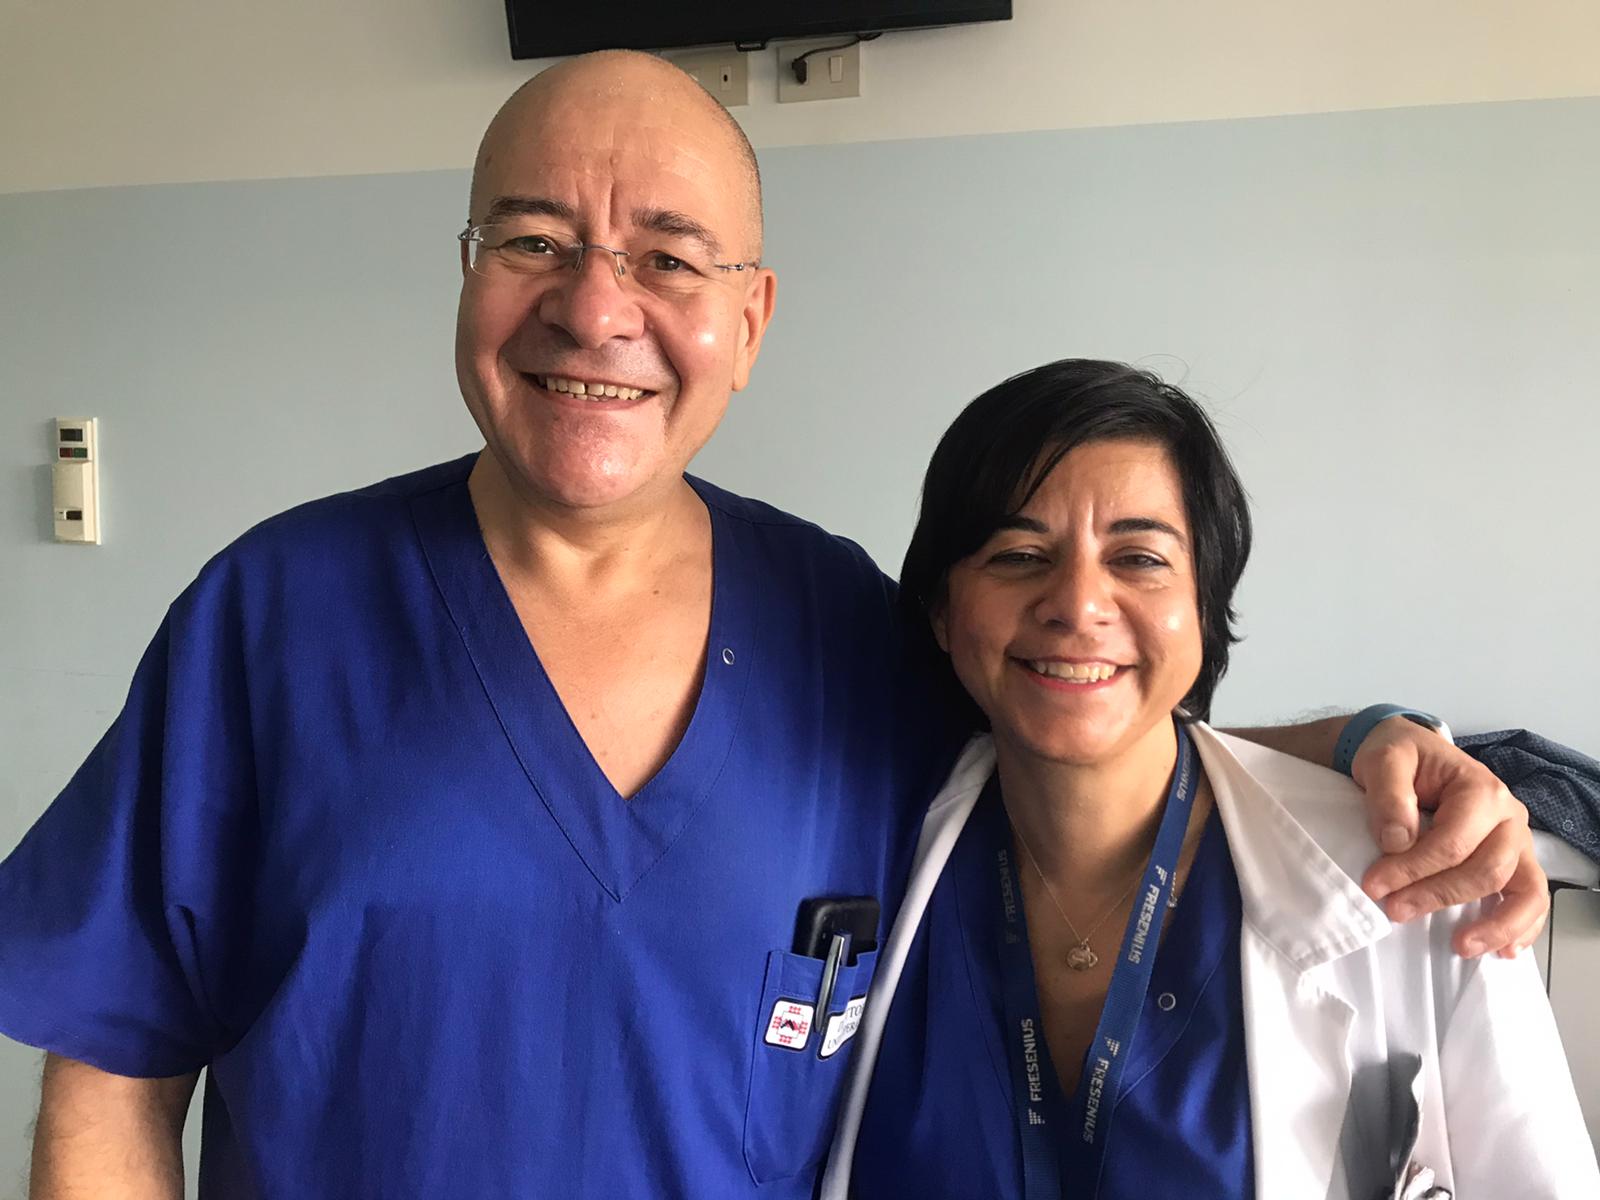 Il noto agente di vip Rocco Corsano sottolinea l’umanità dei medici del reparto di Chirurgia dell’ospedale “Madonna delle Grazie” di Matera